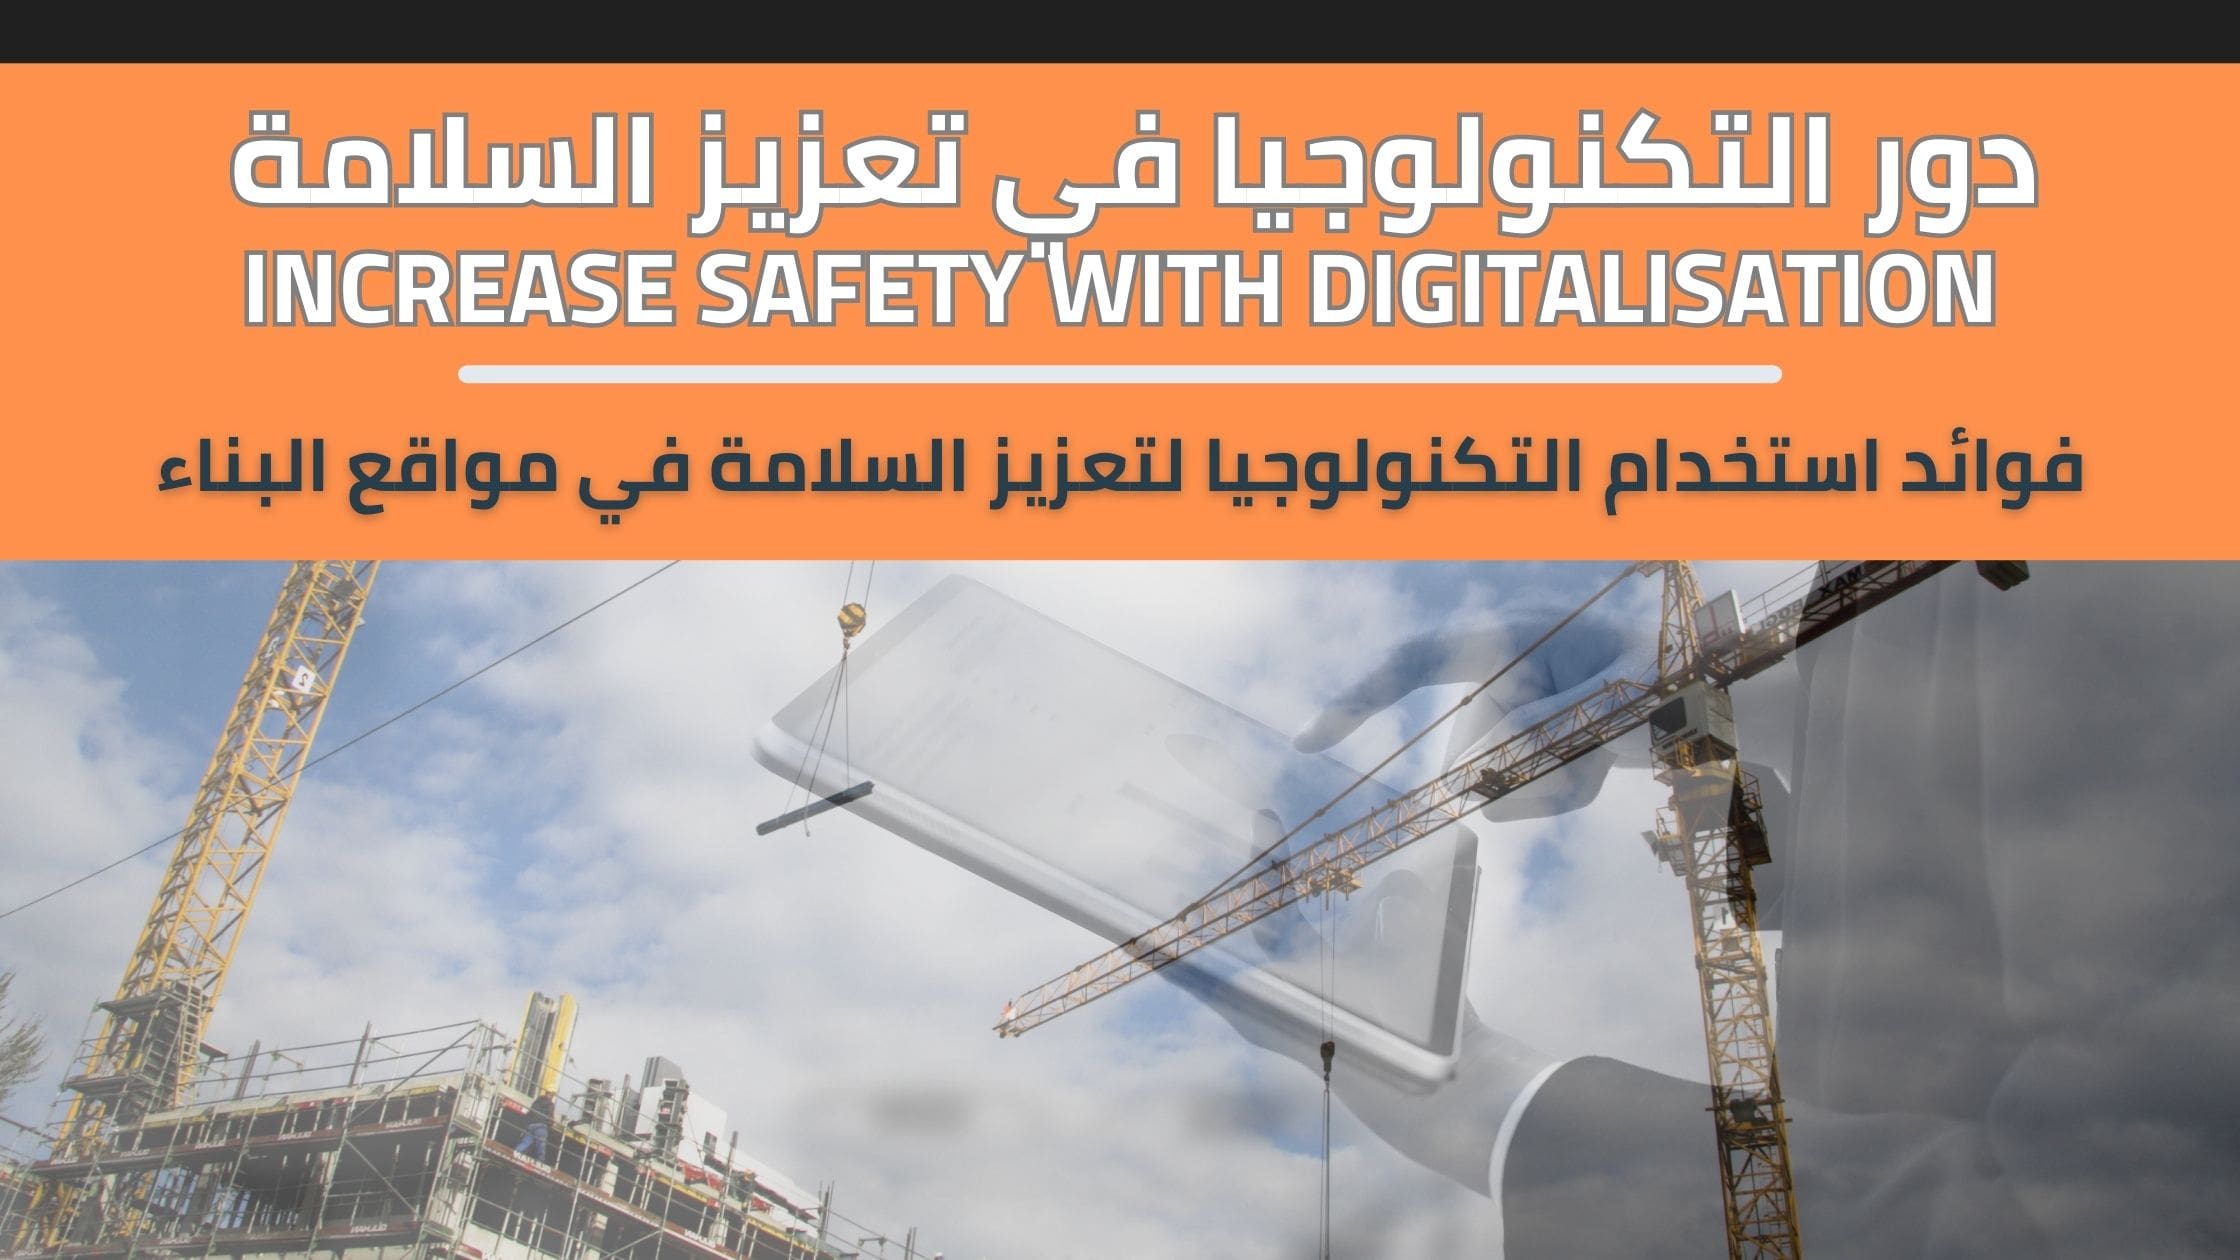 فوائد استخدام التكنولوجيا لتعزيز السلامة في مواقع البناء